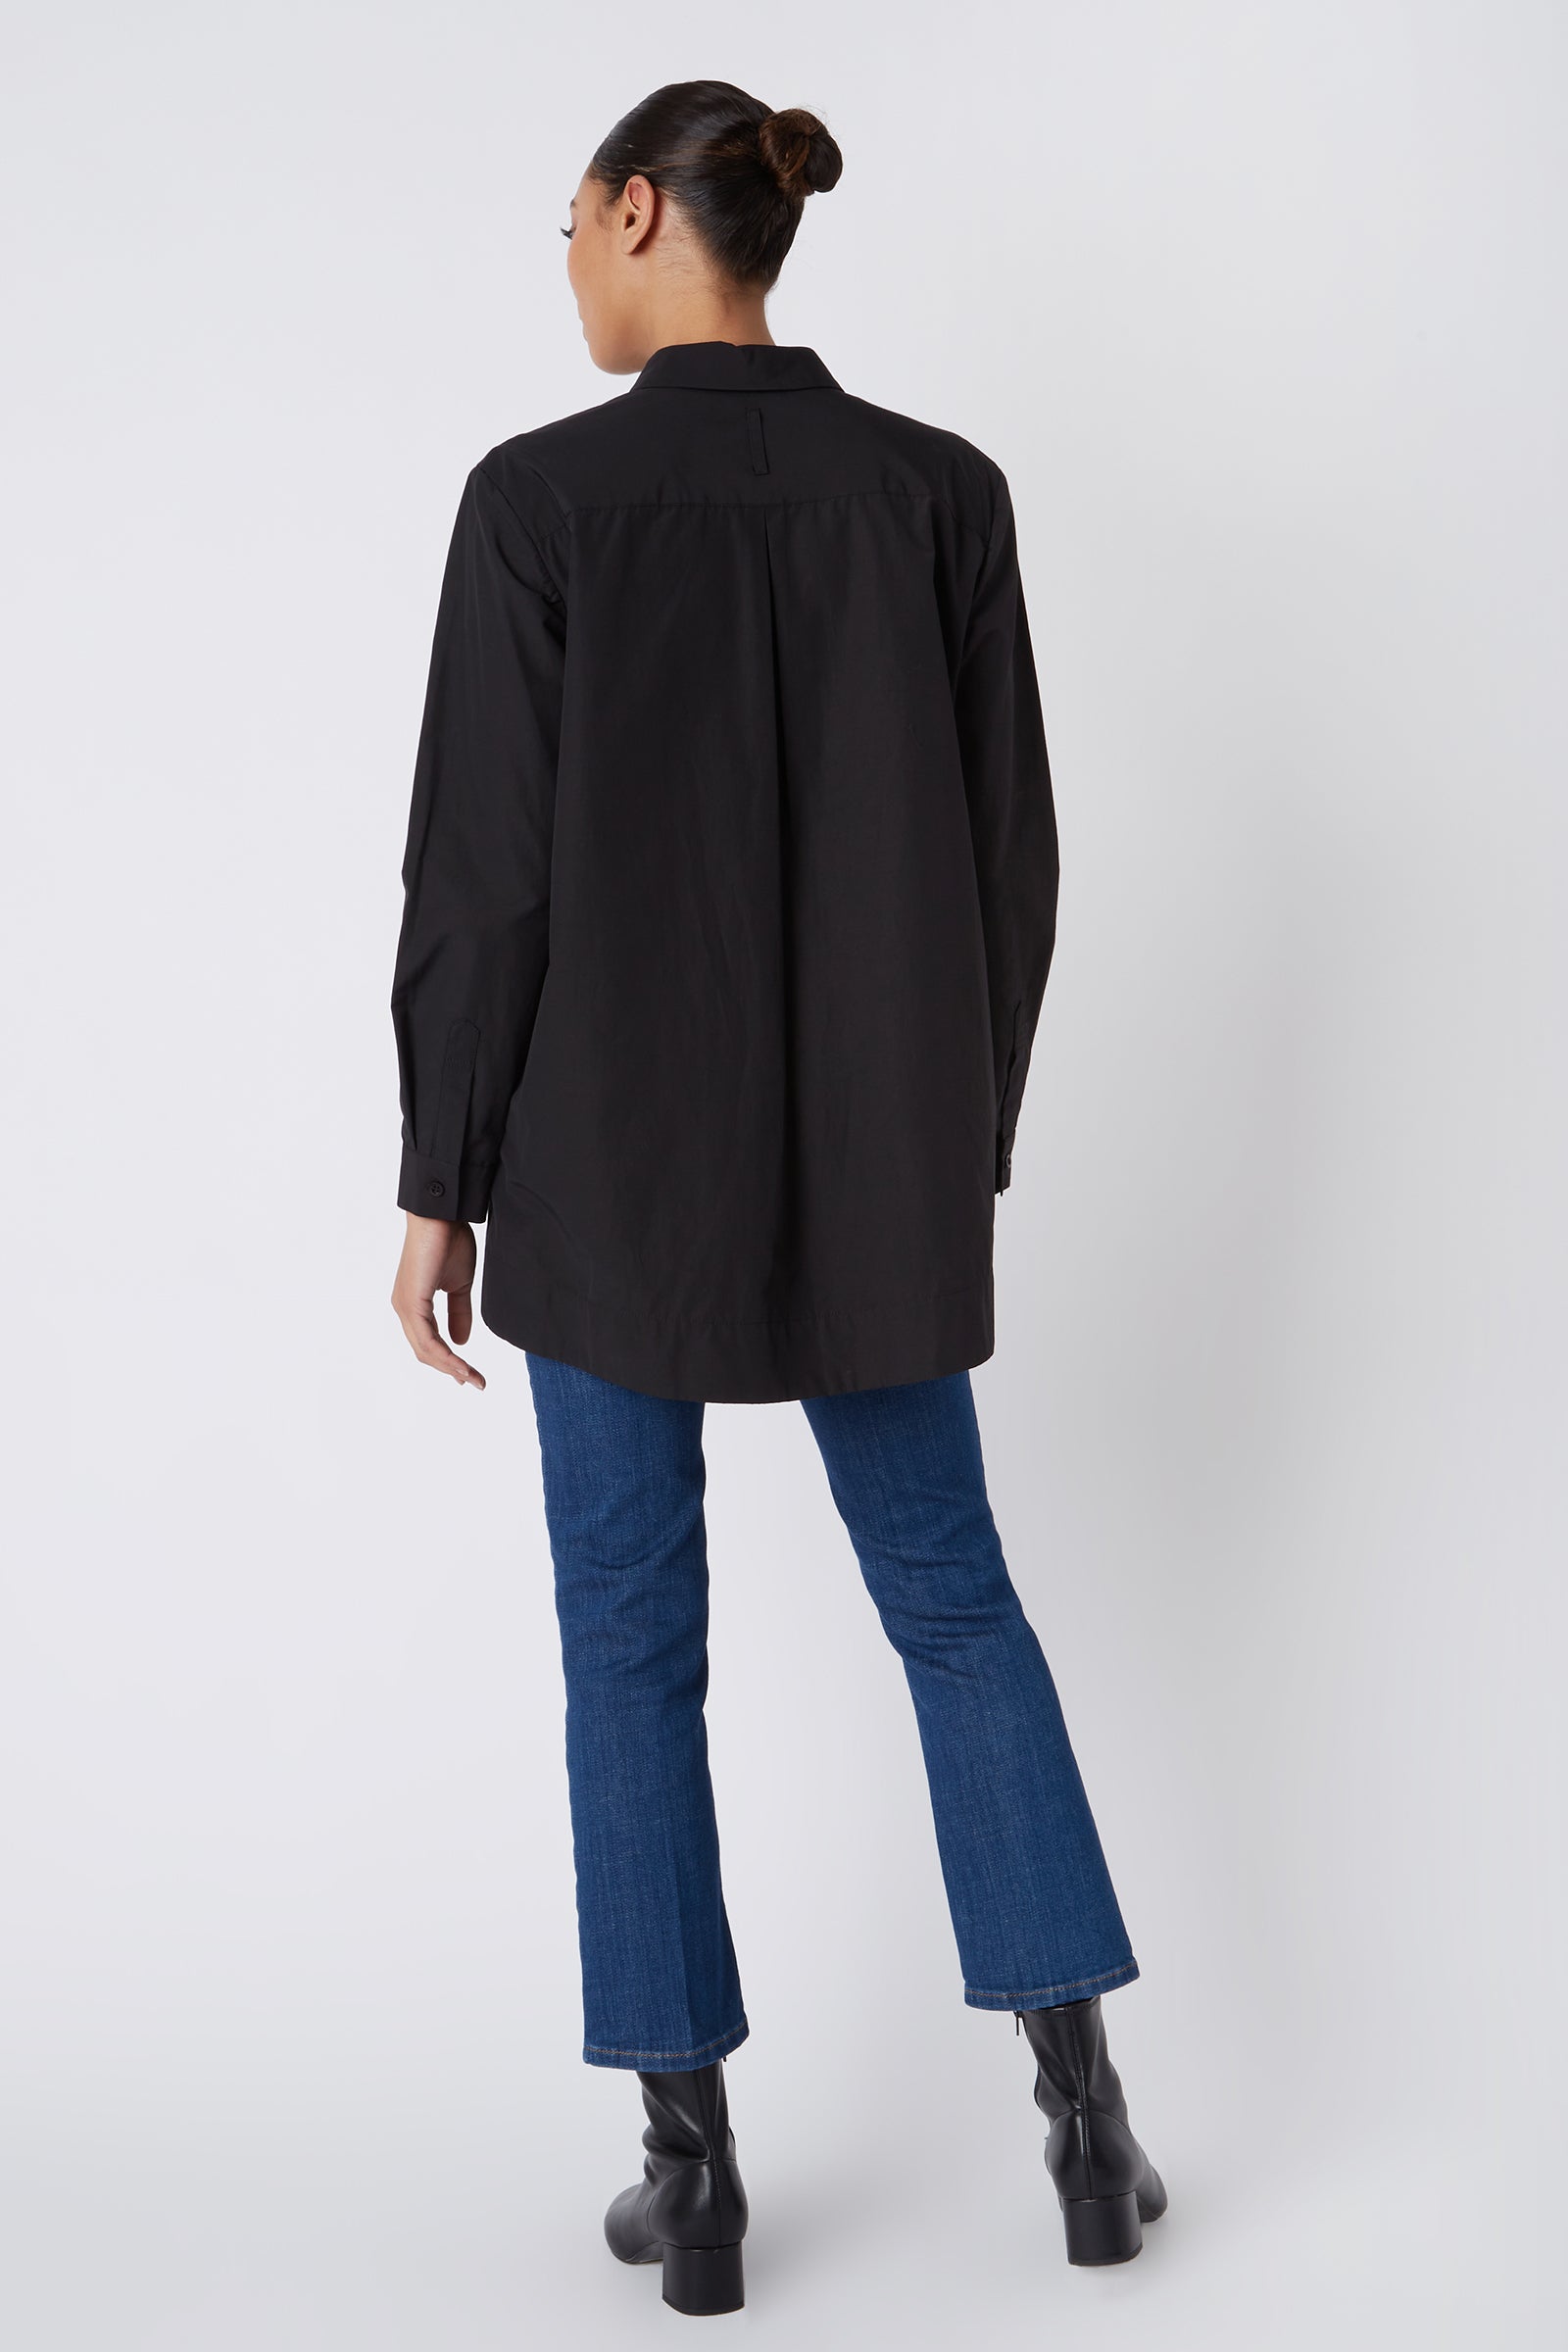 Lori Tab Collar Tunic in Black with Tab Collar and Button – KAL RIEMAN